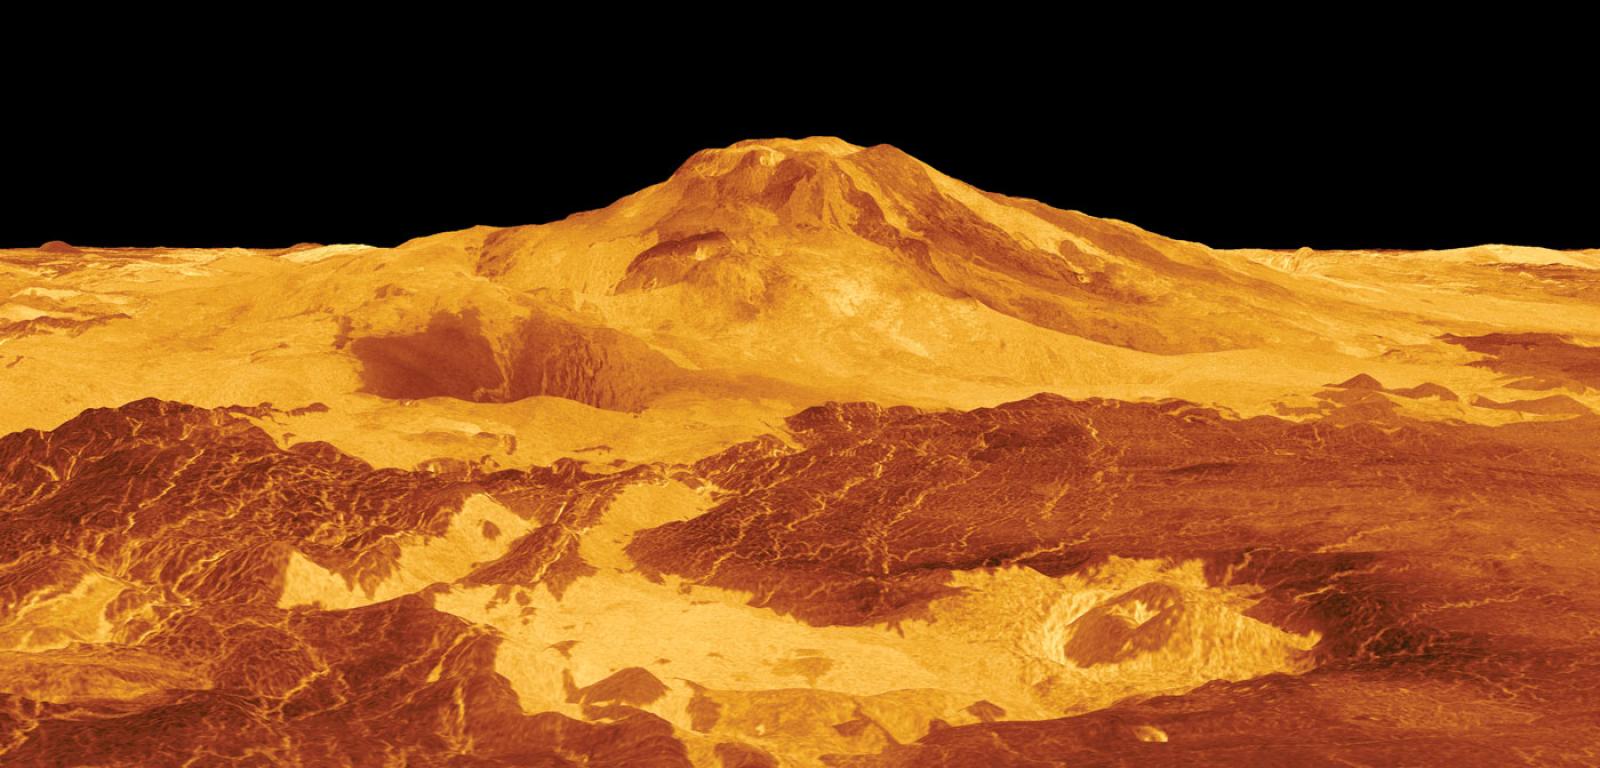 Widok wenusjańskiego wulkanu Maat Mons wygenerowany na podstawie danych zebranych przez sondę kosmiczną Magellan.